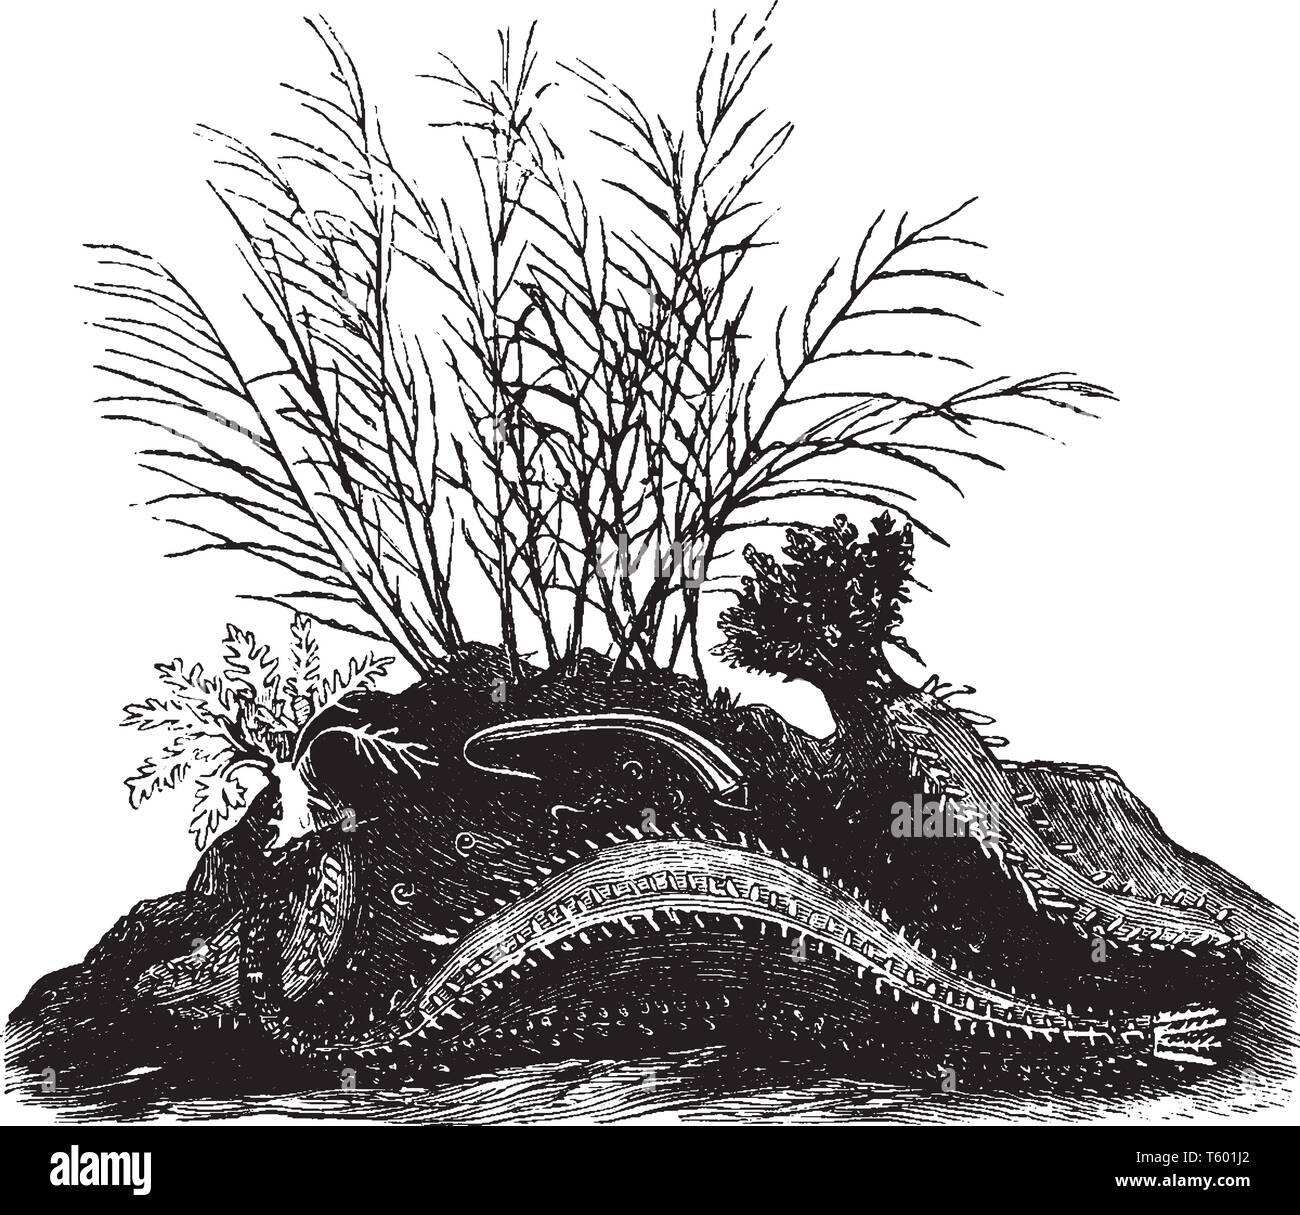 Angolare di cetrioli di mare è anche una specie europee con doppia fila di ventose presenta verrucosa, vintage disegno della linea di incisione o illustrazione. Illustrazione Vettoriale